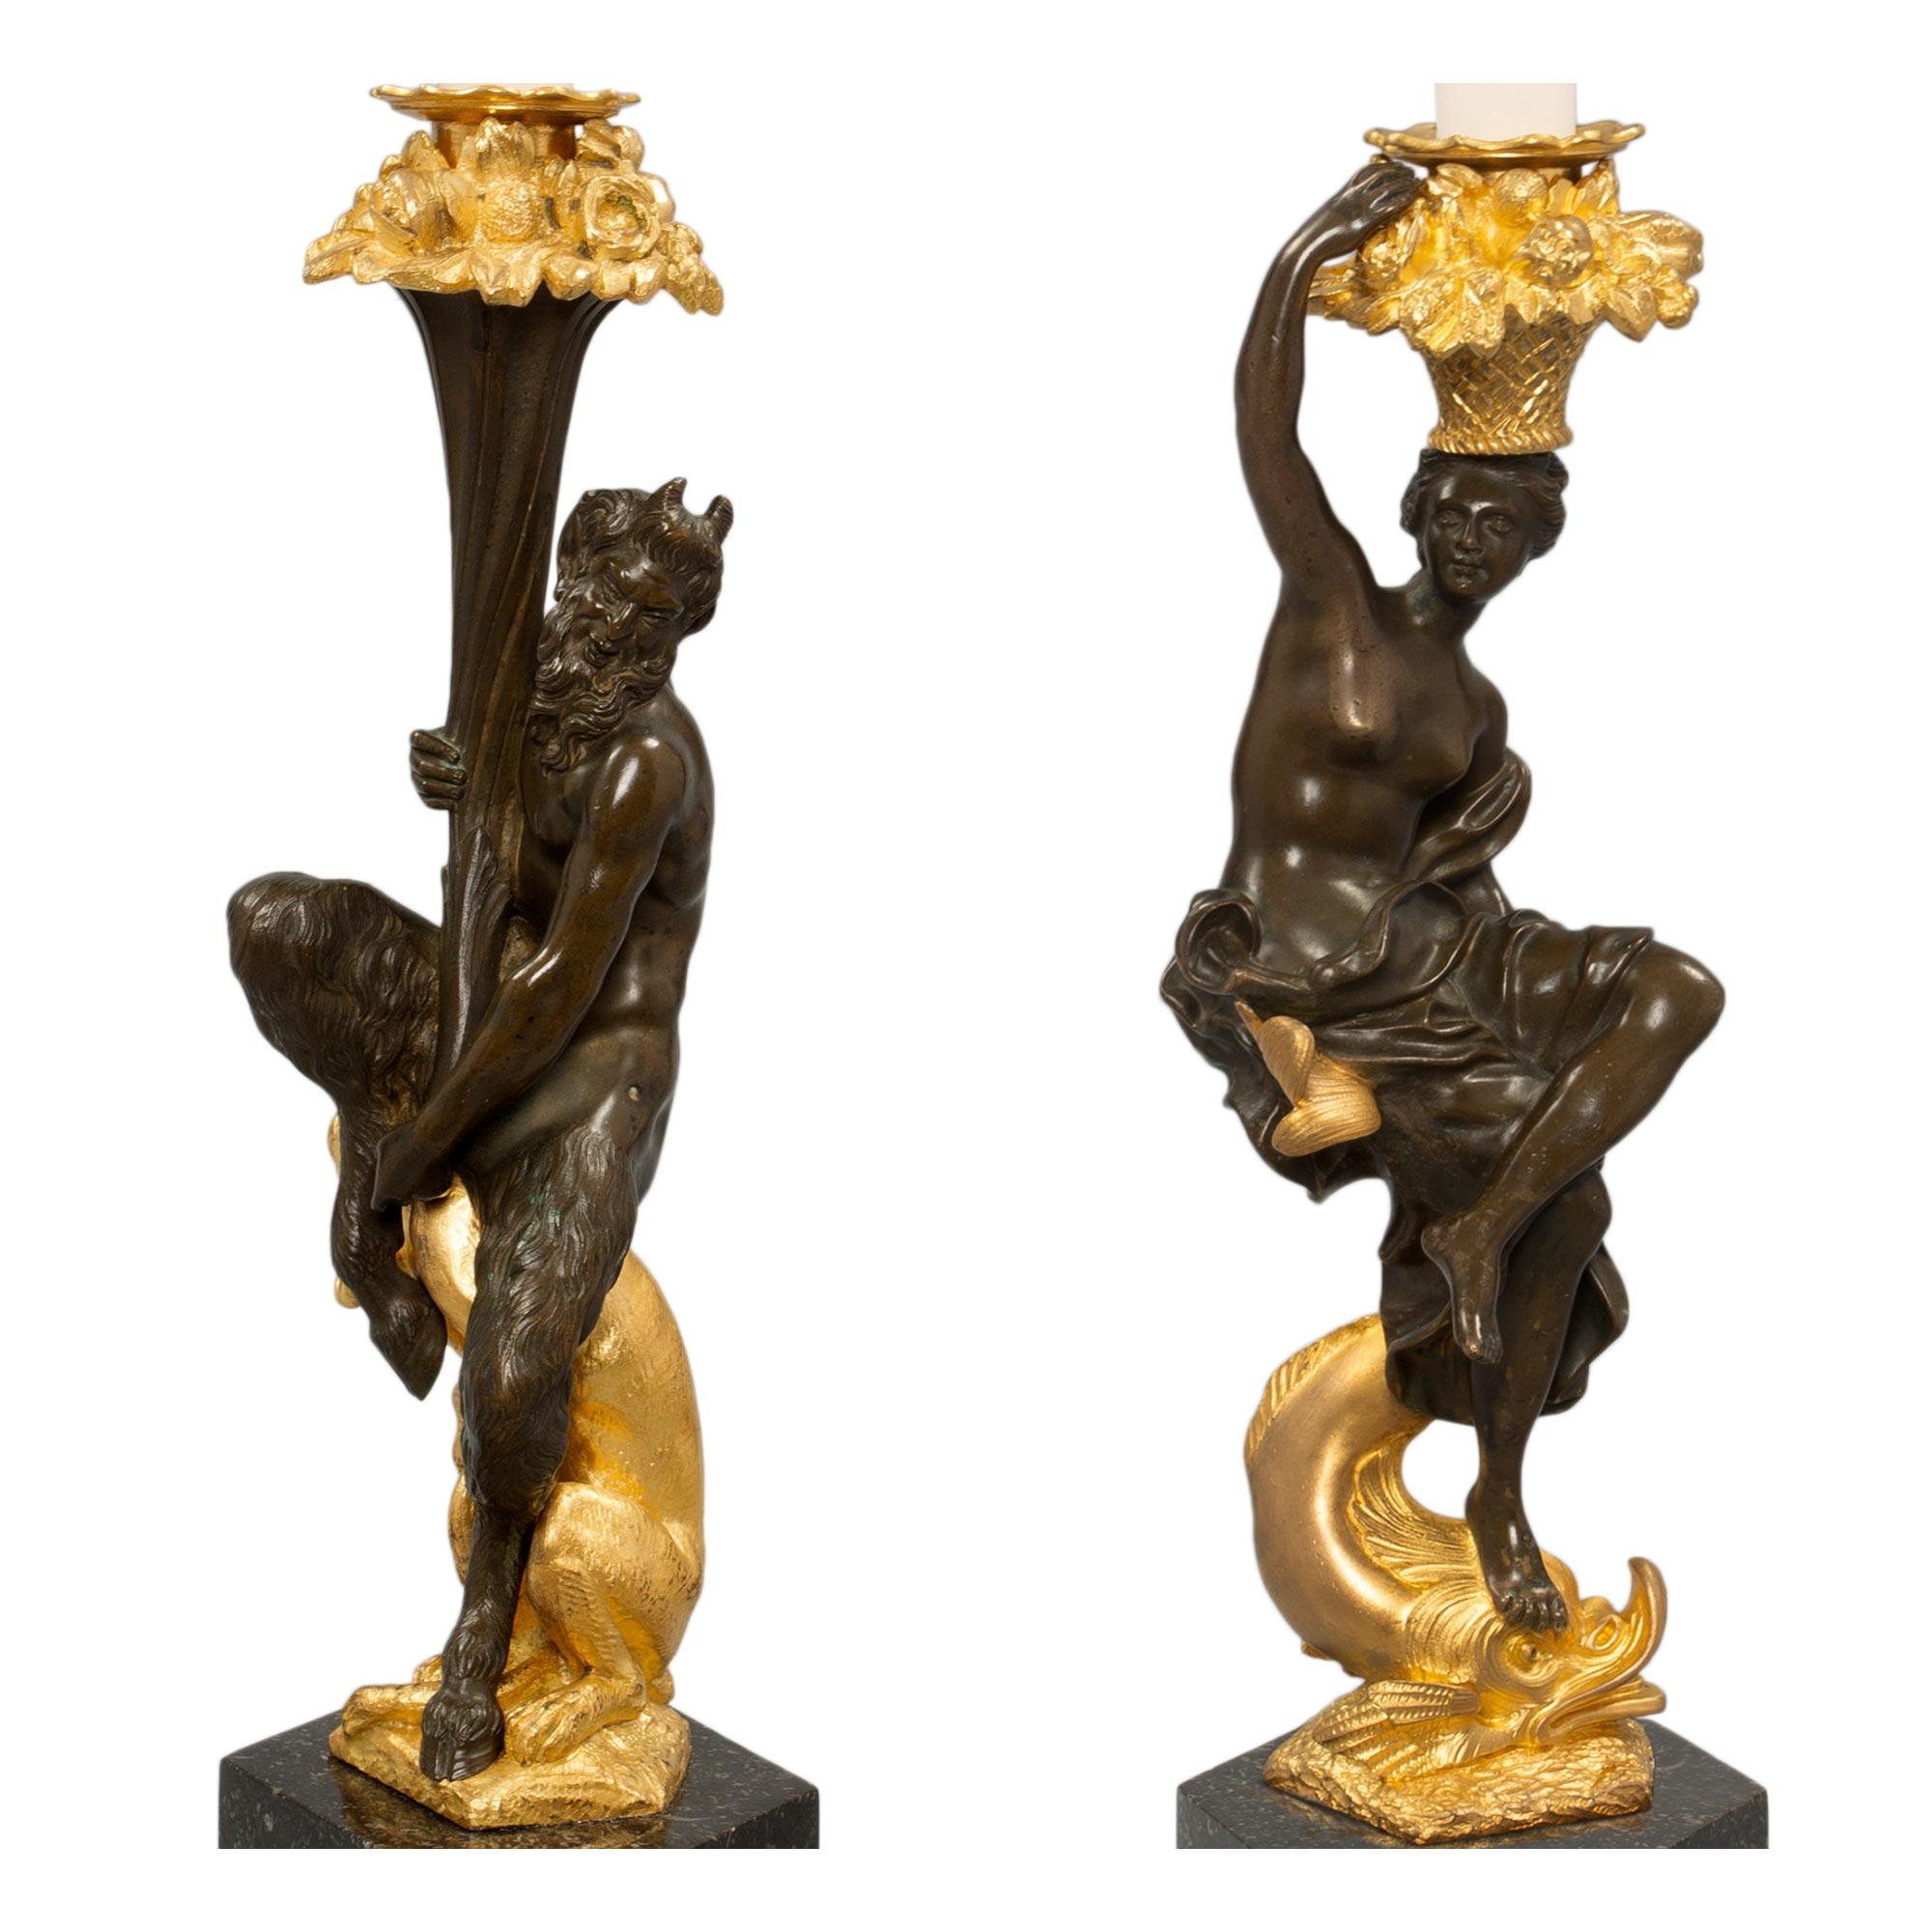 Une paire exceptionnelle de chandeliers français du 19ème siècle de style Renaissance en bronze patiné, bronze doré et granit belge. Chaque chandelier est surélevé par des bases hexagonales en granit avec une bande inférieure enveloppante en bronze